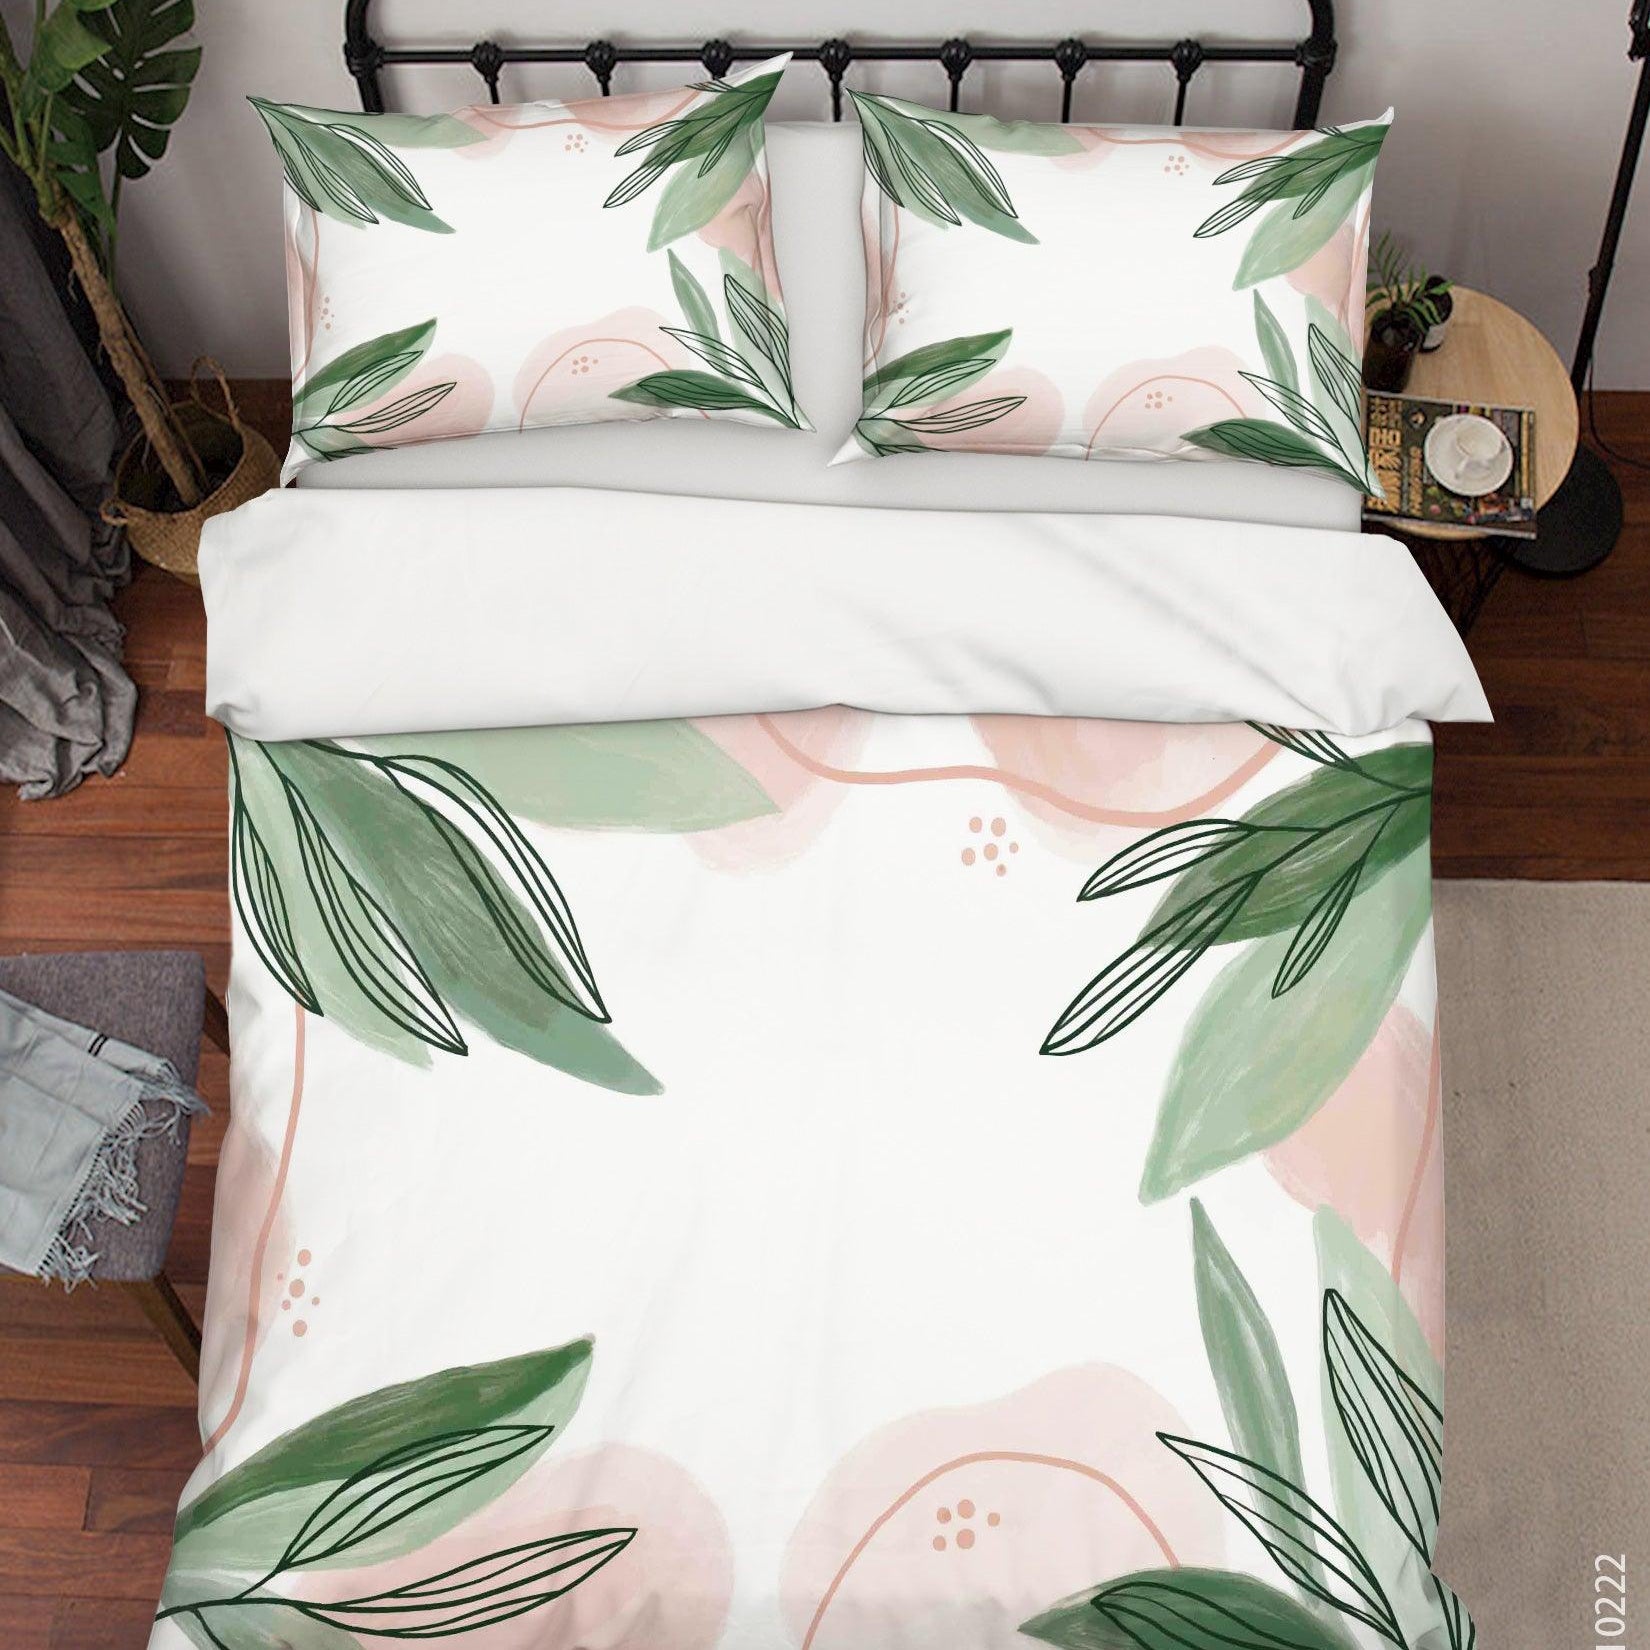 3D Watercolor Green Leaf Quilt Cover Set Bedding Set Duvet Cover Pillowcases 127- Jess Art Decoration